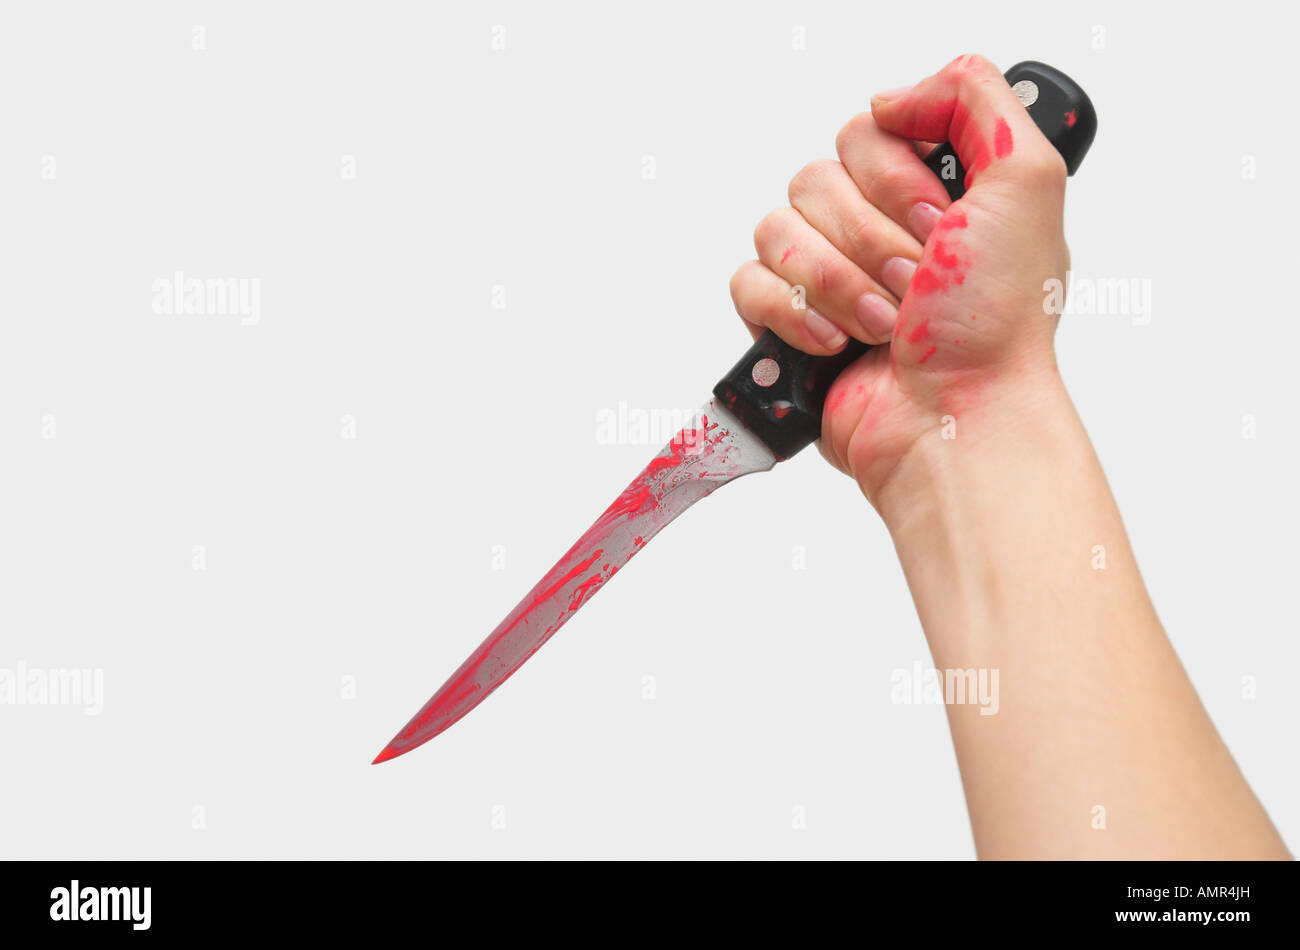 La main de femme avec de la peinture rouge holding knife Banque D'Images